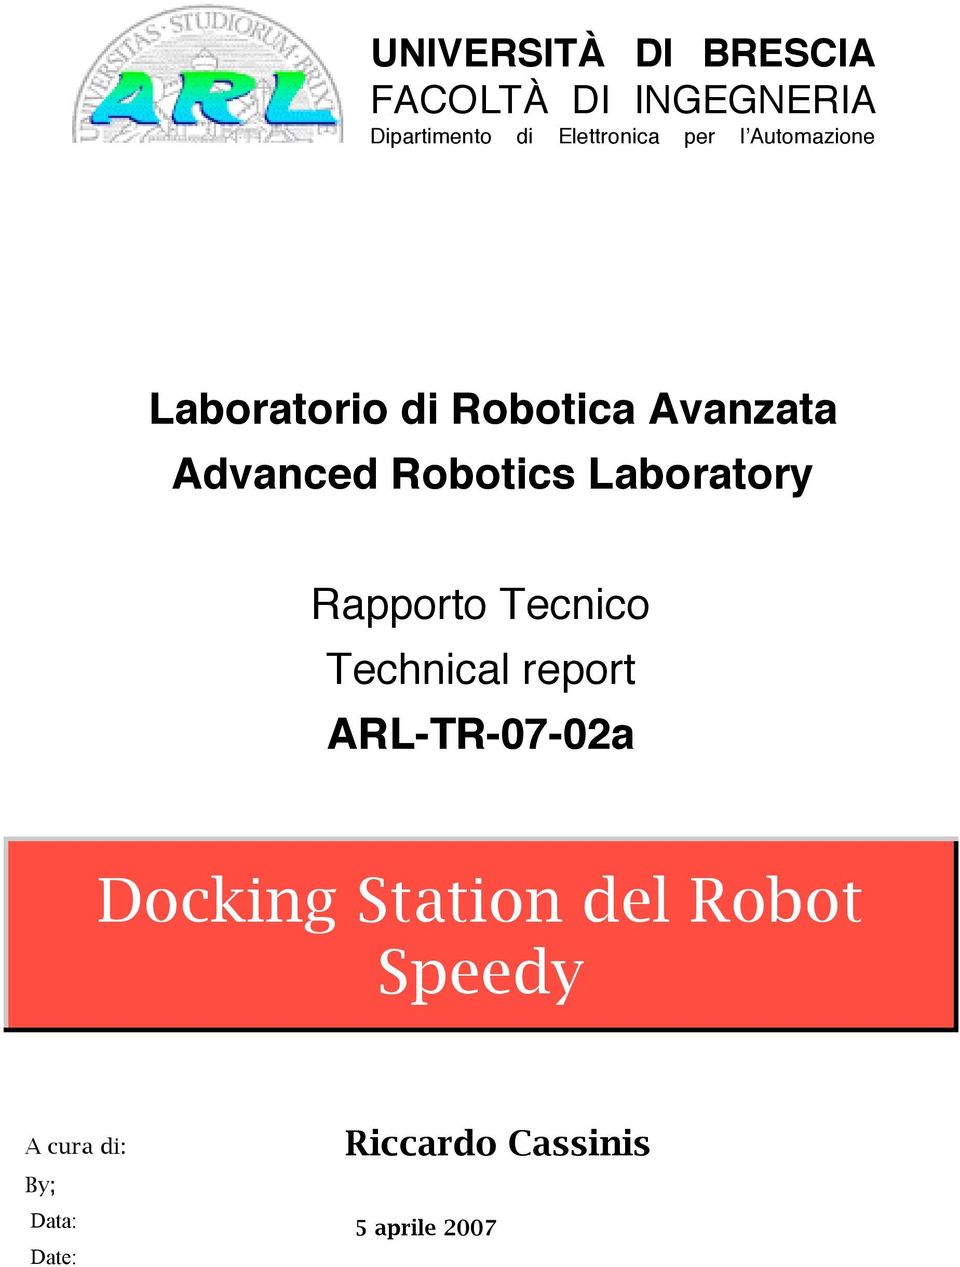 Laboratory Rapporto Tecnico Technical report ARL-TR-07-02a Docking